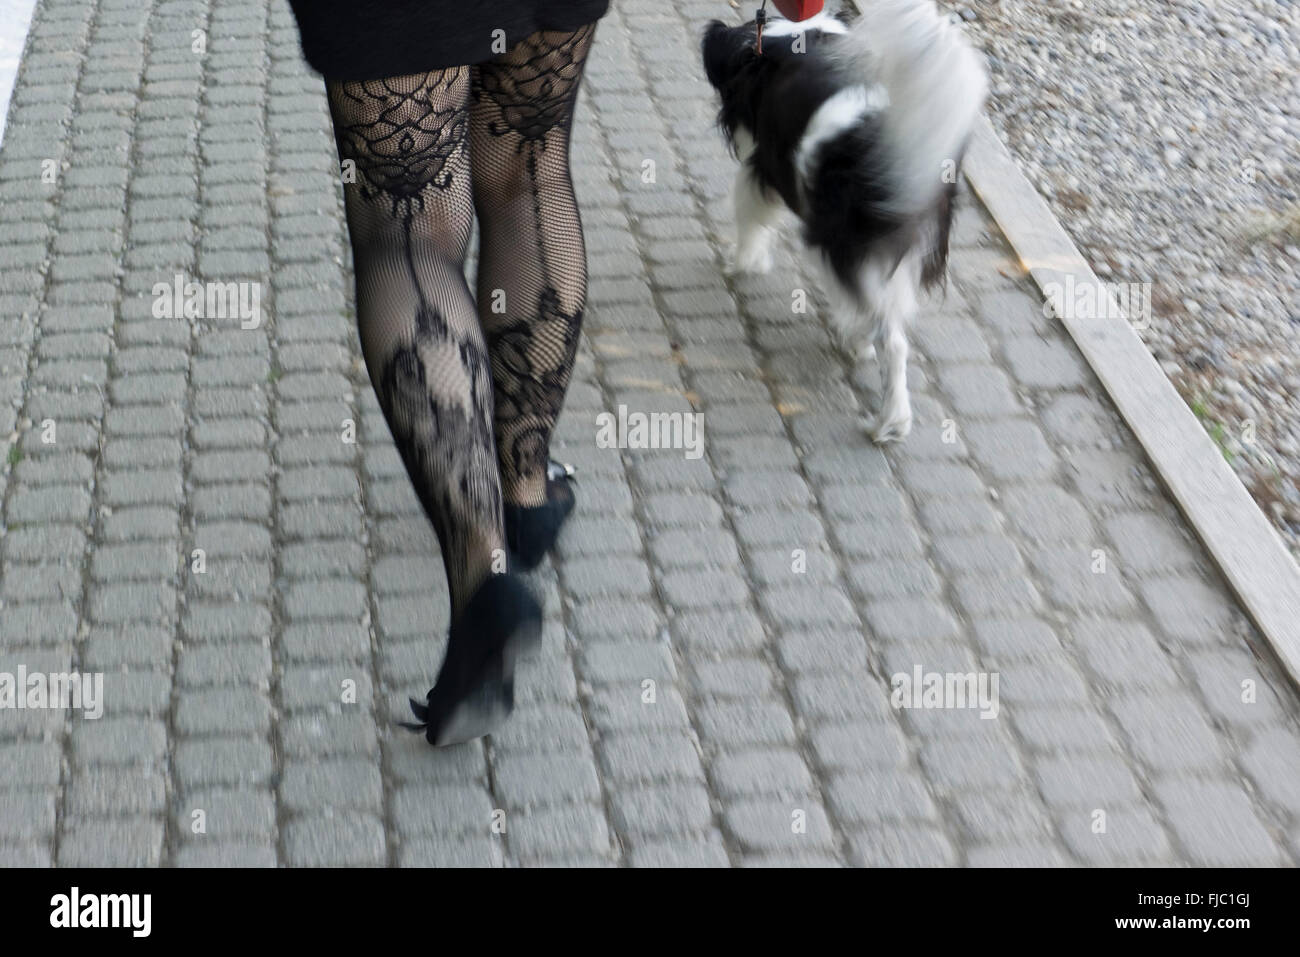 Frauenbeine mit Spitzen-Strümpfen im Gehen und Hund Stock Photo